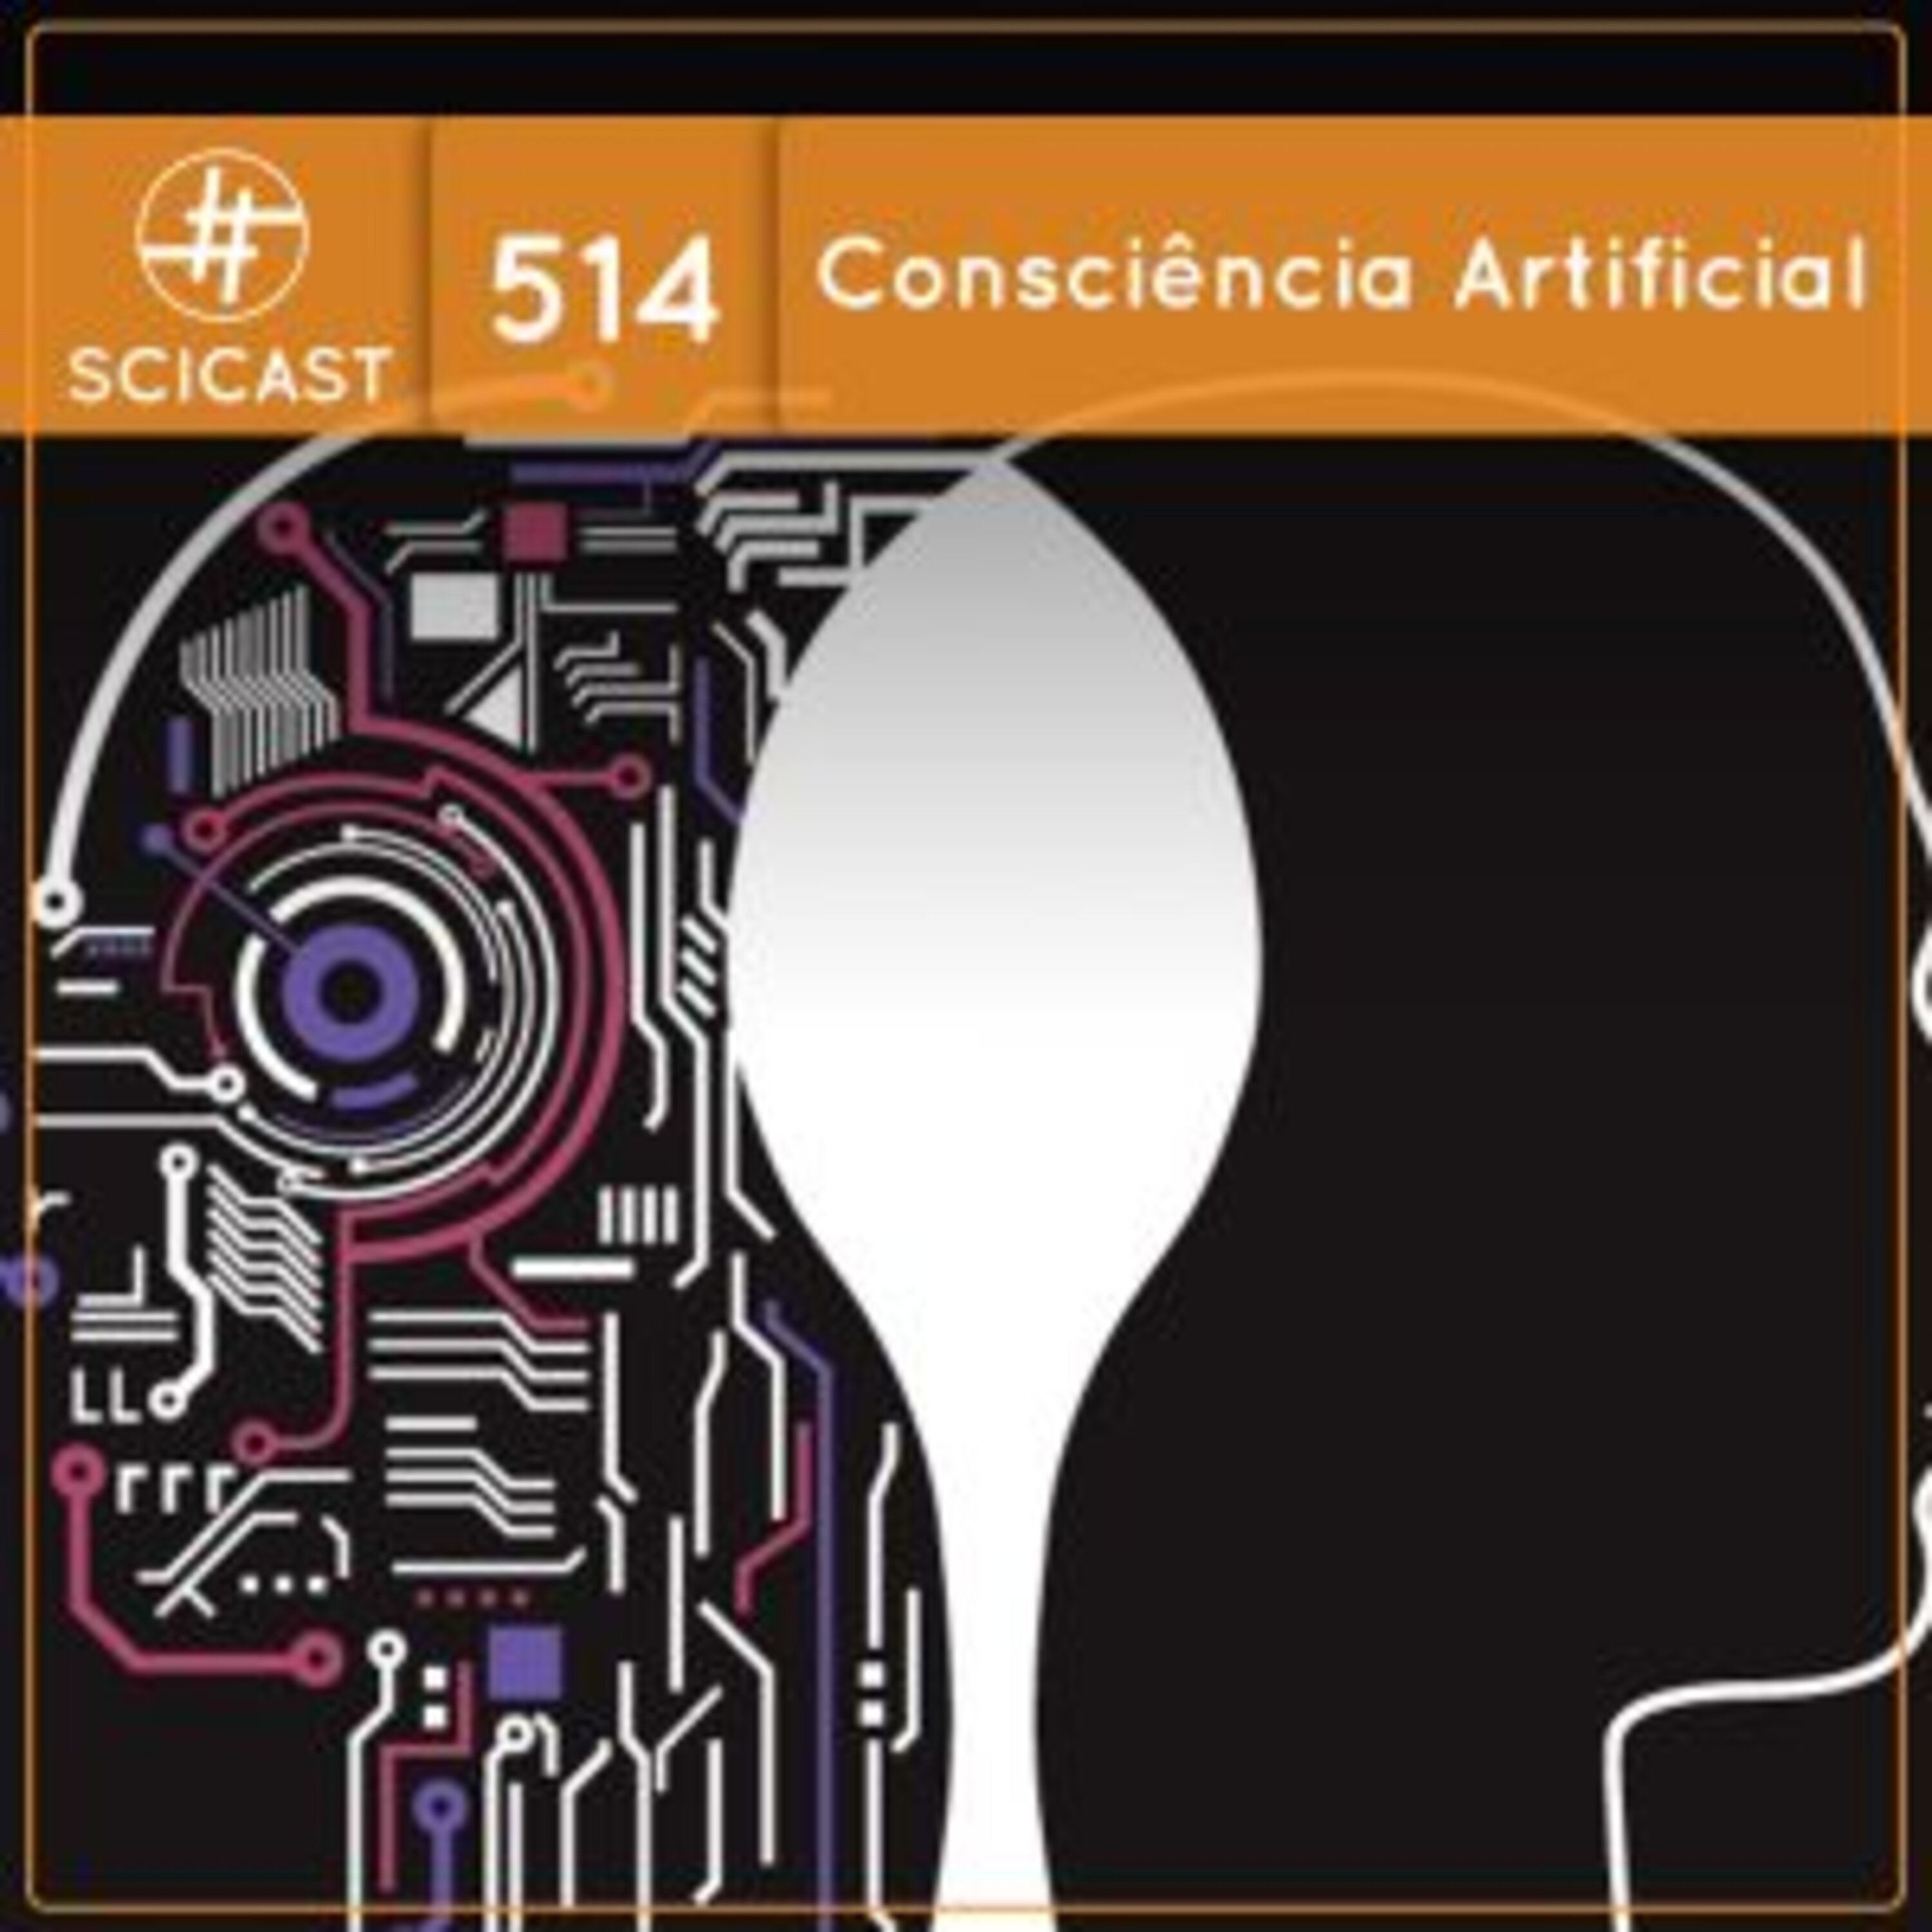 Consciência artificial (SciCast #514)